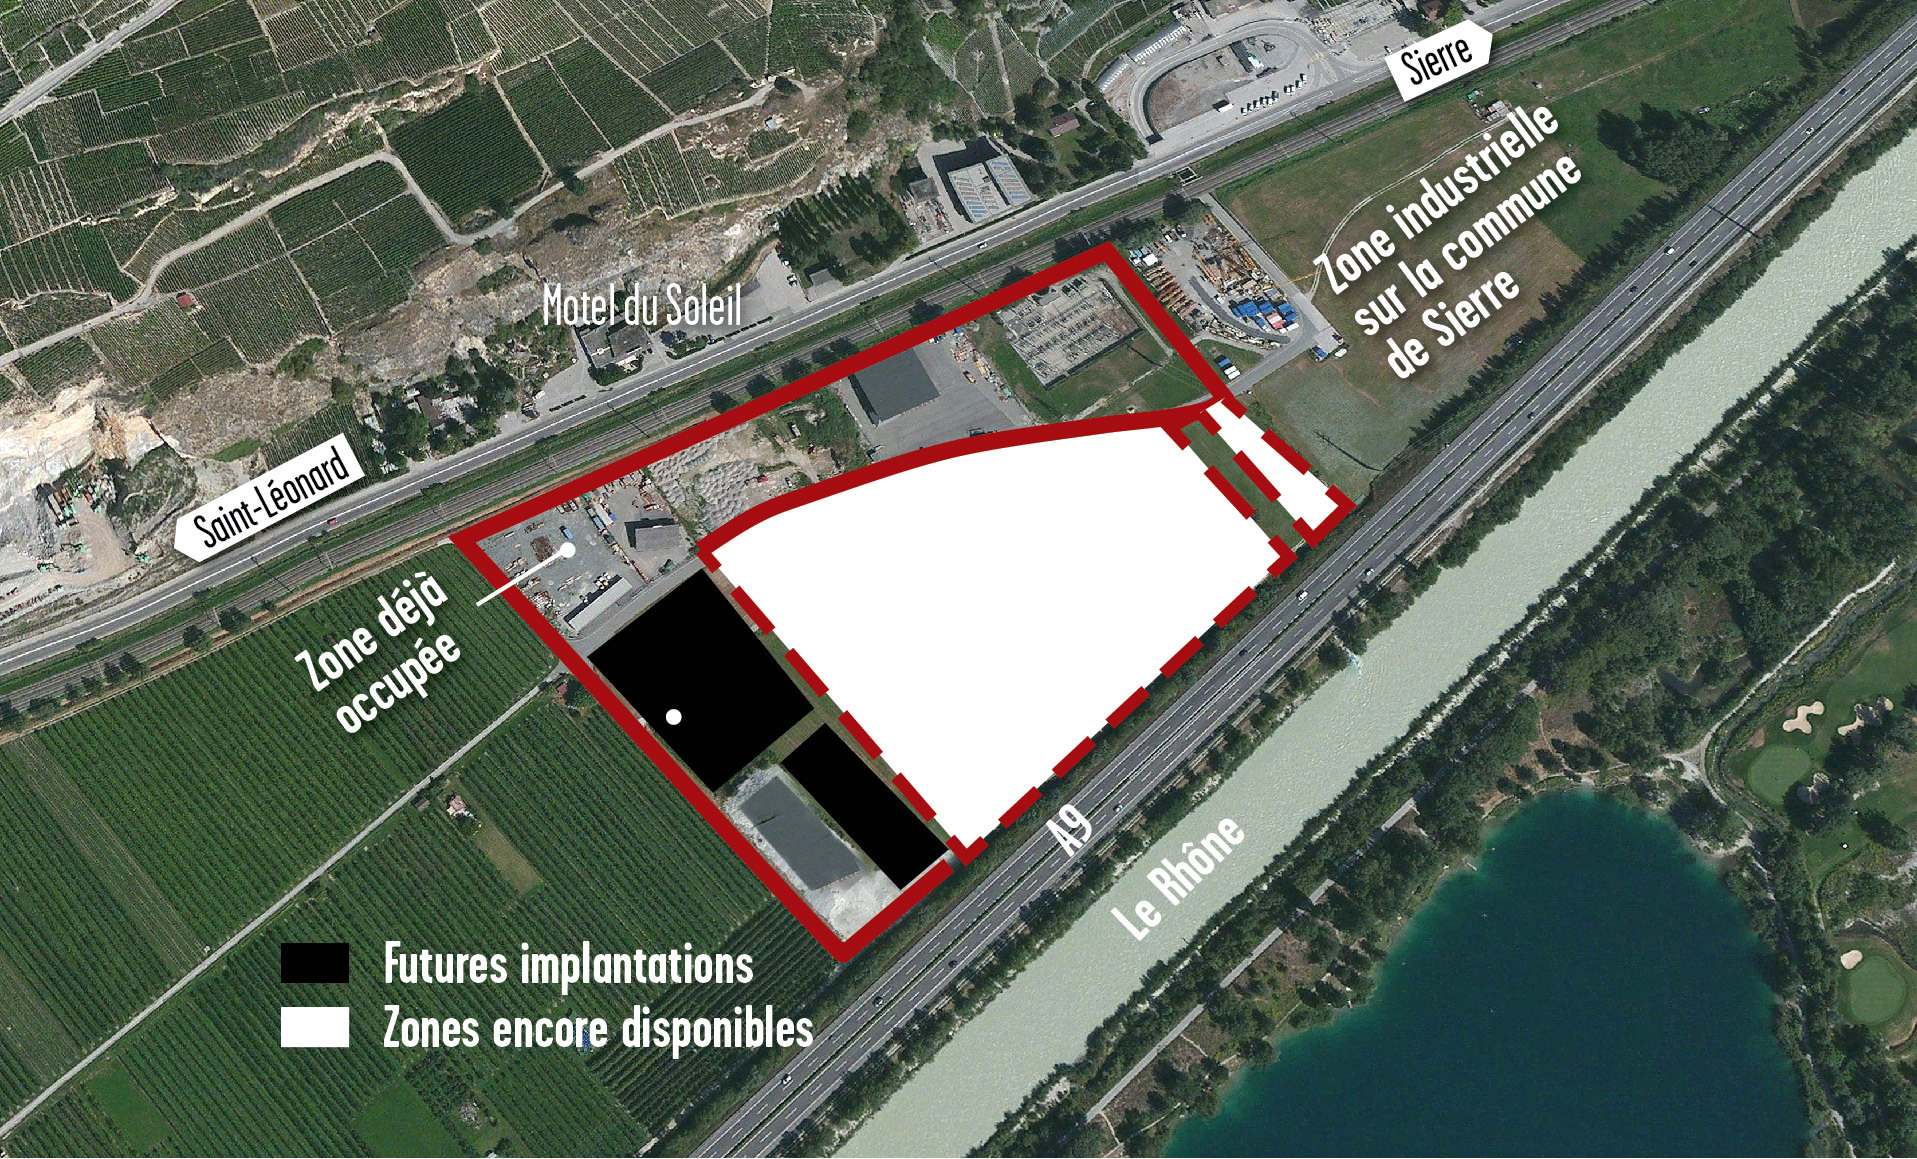 Six entreprises se sont installées sur la partie de la zone industrielle appartenant à la commune de Saint-Léonard. 33'000 mètres carrés sont encore inoccupés.